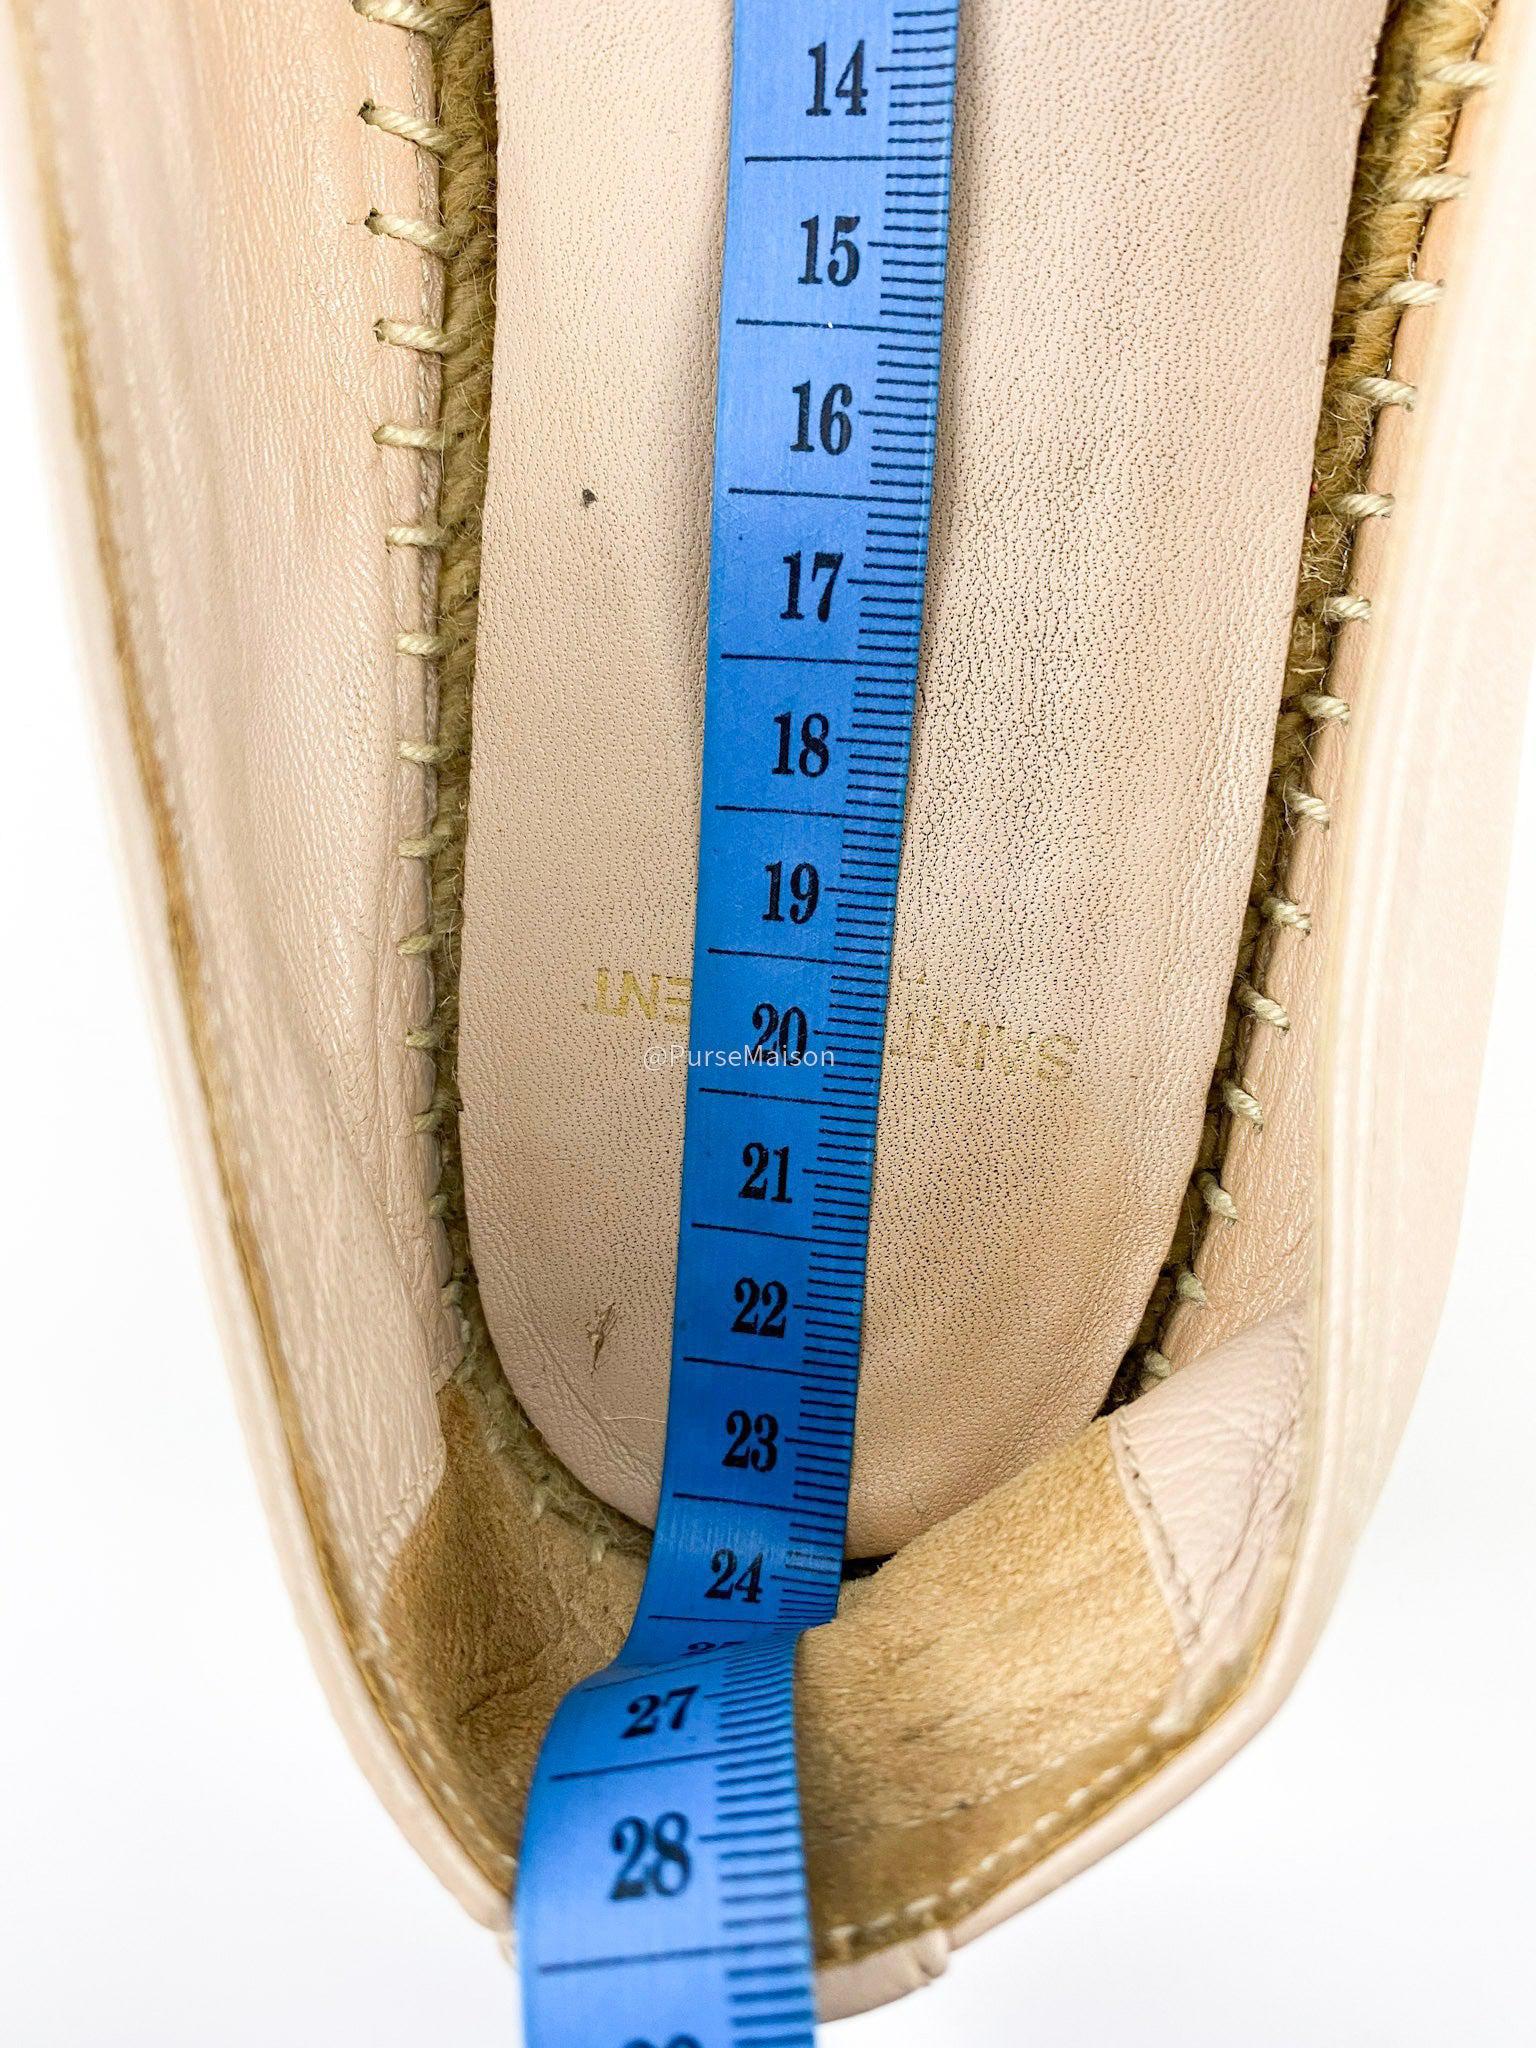 Yves Saint Laurent Beige Espadrilles Size 37.5 EUR